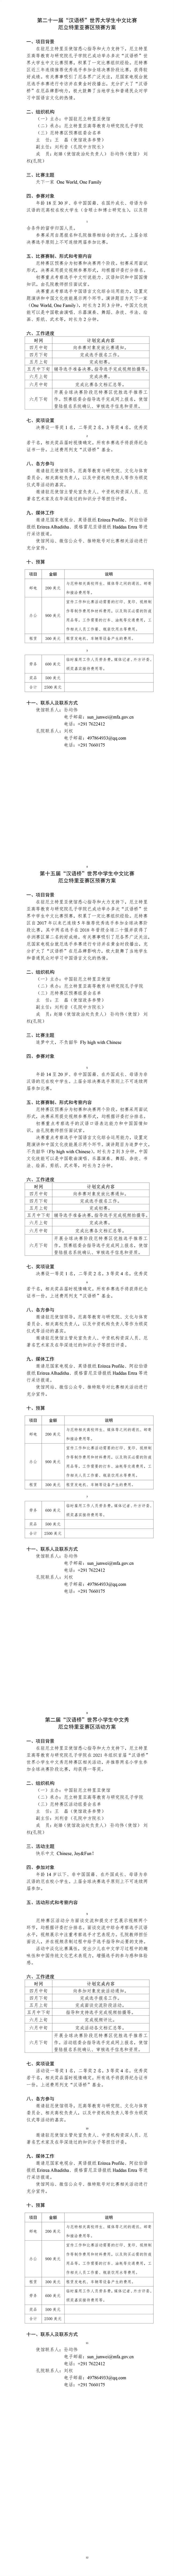 2022年汉语桥世界大中小学生中文比赛厄立特里亚赛区预赛方案_01.jpg